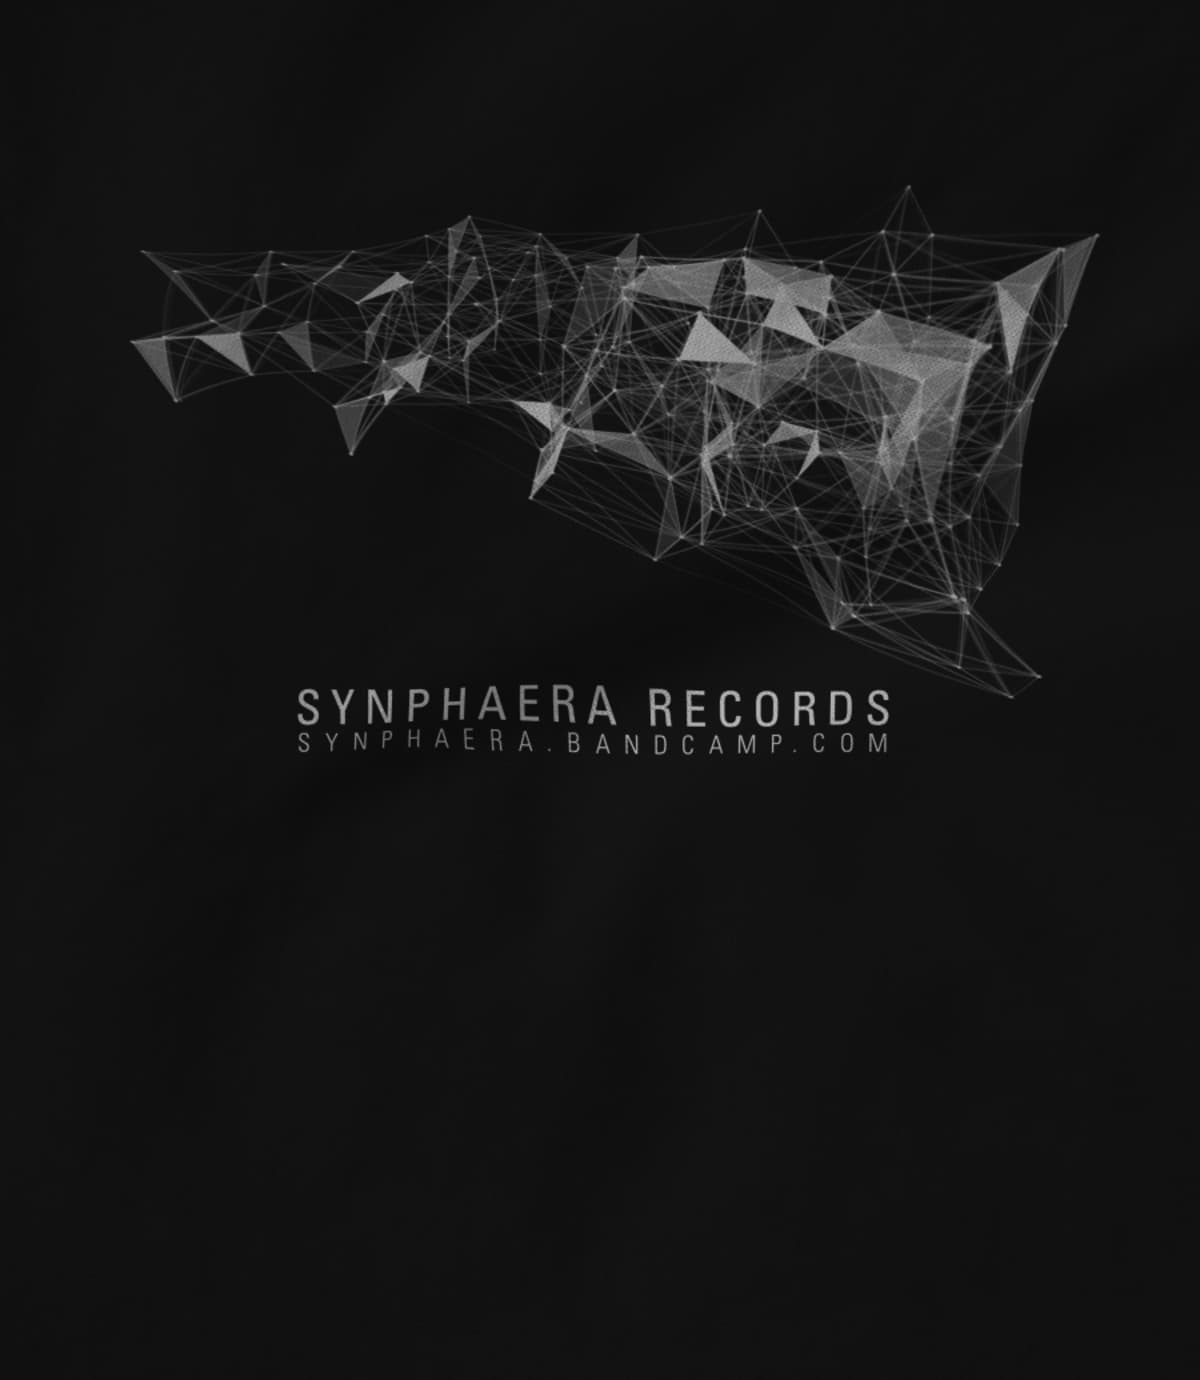 Synphaera synphaera new design 6 1522168684